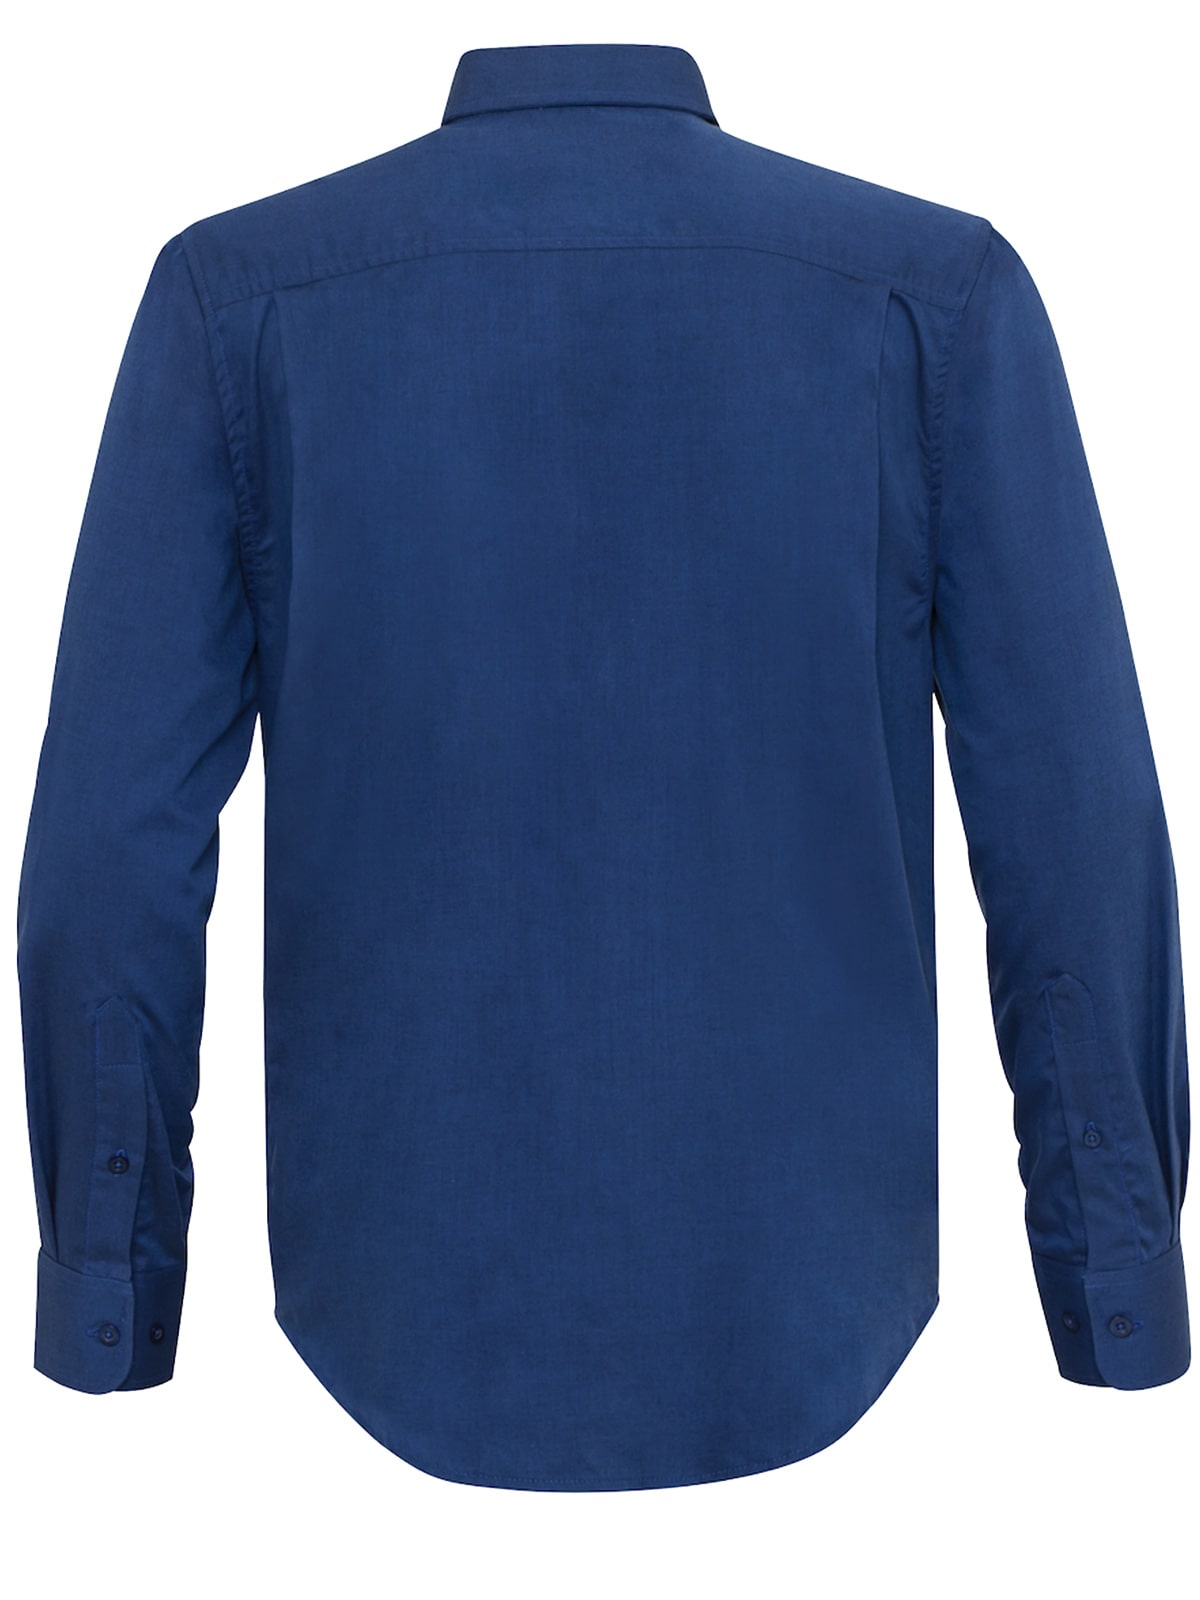 Navy blue oxford shirts